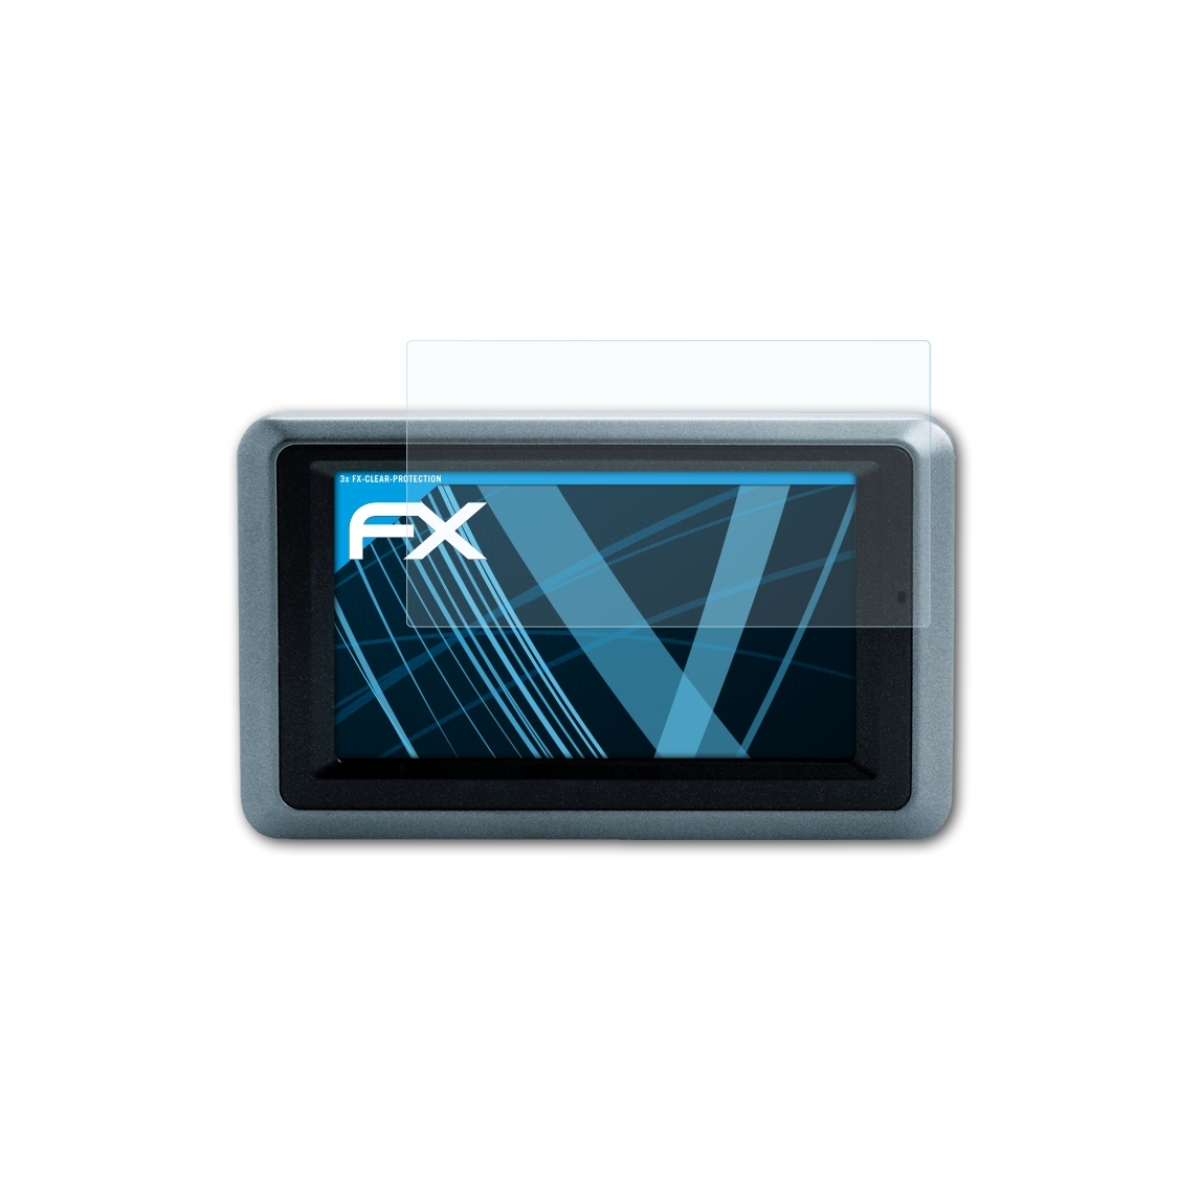 Zumo FX-Clear ATFOLIX 3x Garmin 660) Displayschutz(für